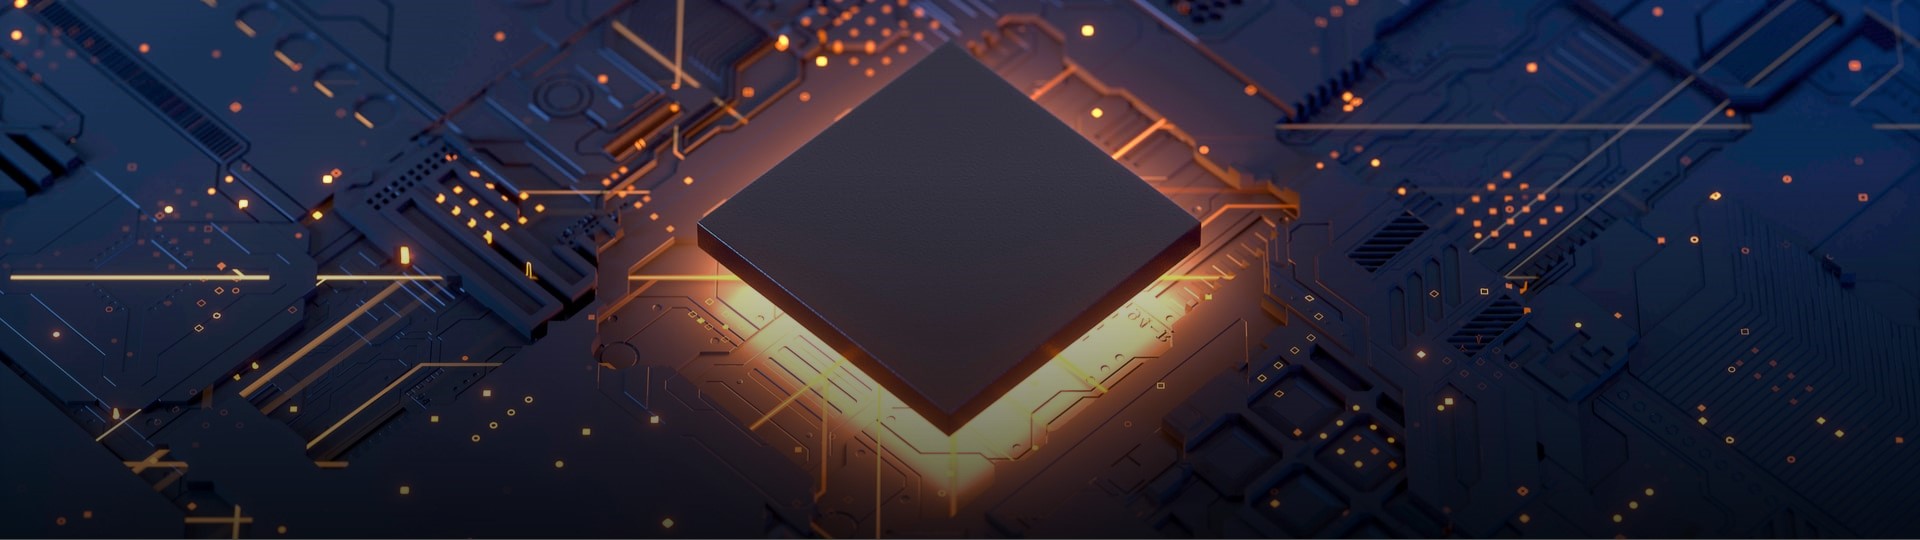 Výrobce čipů AMD jedná o převzetí konkurenta Xilinx